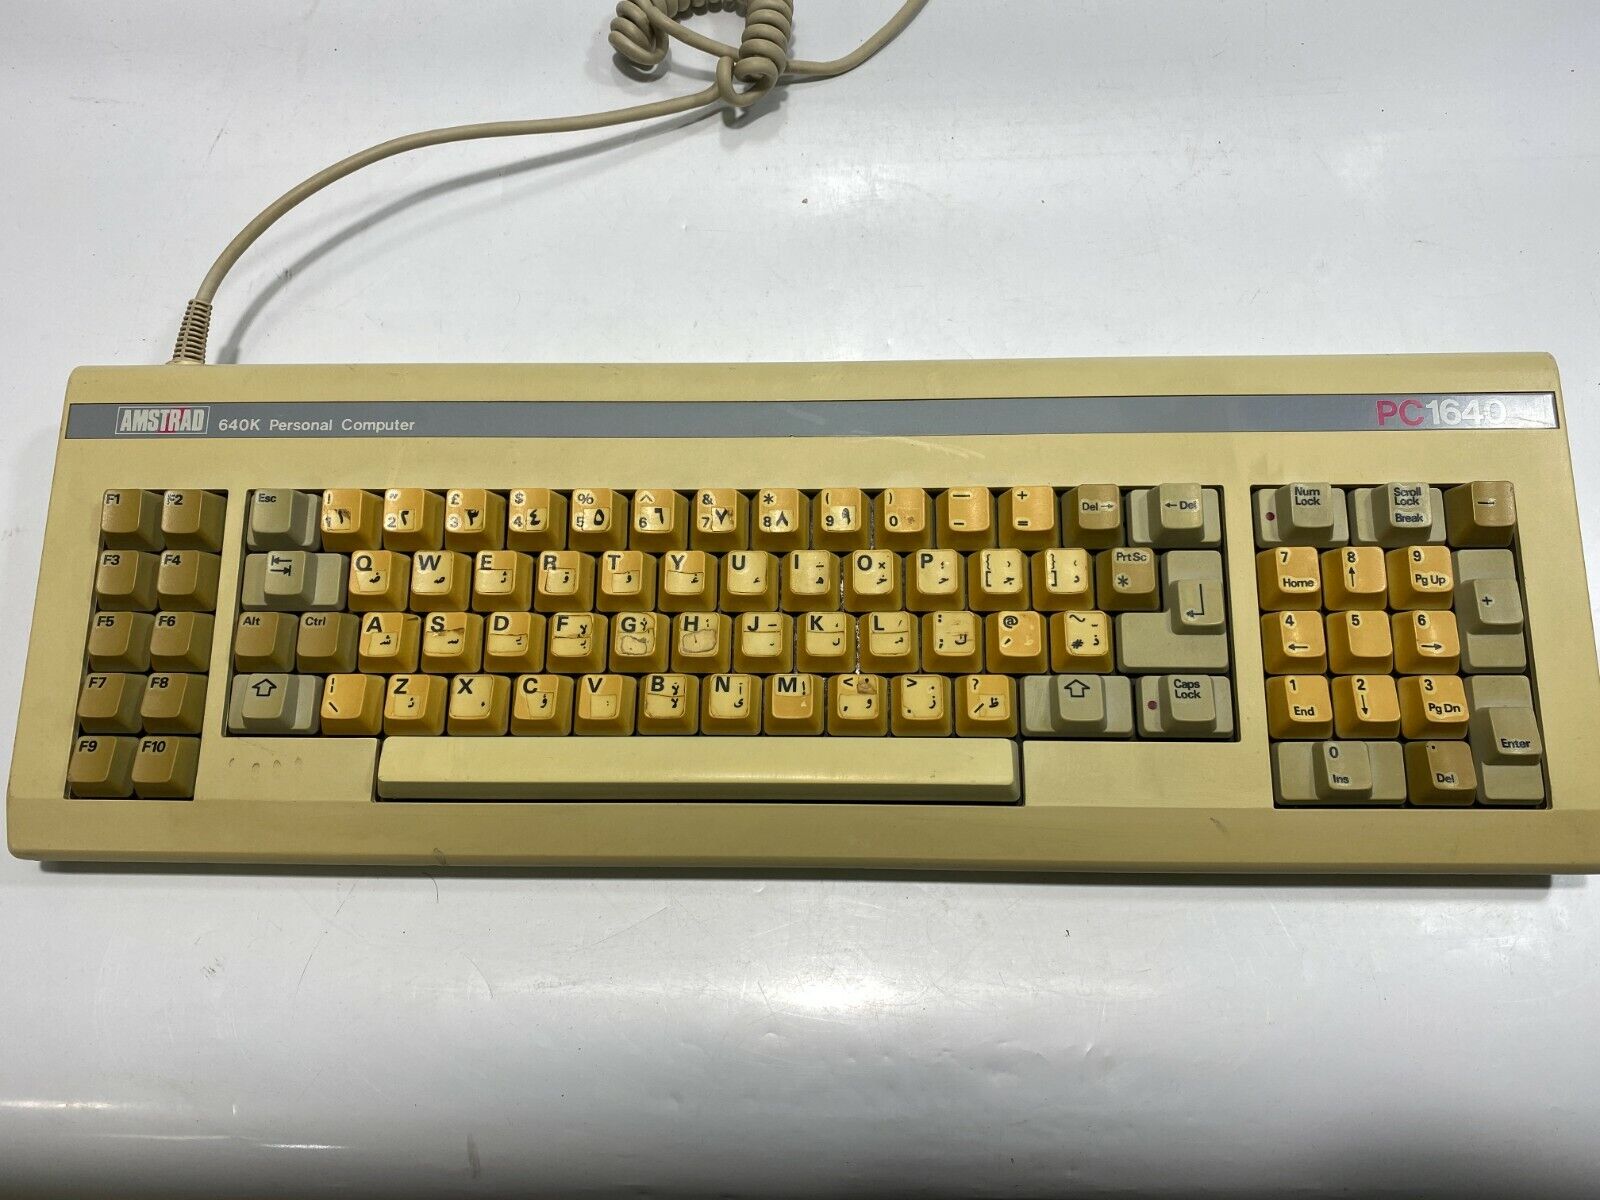  Vintage Amstrad Keyboard Model PC-1640